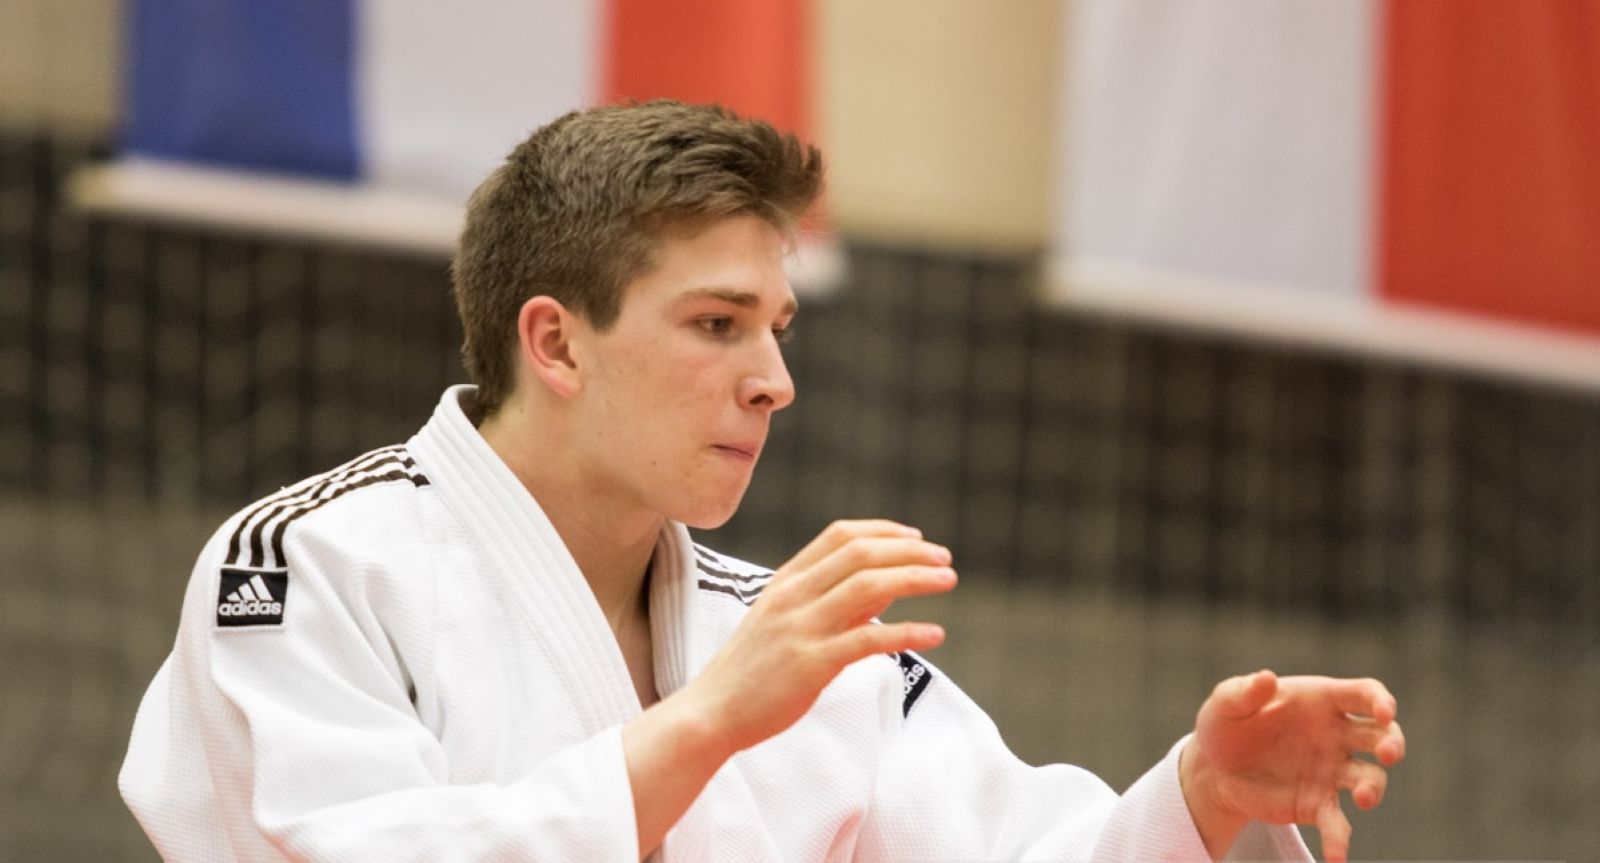 3. Platz für Nils Dönges bei der Südwestdeutschen Einzelmeisterschaft im Judo